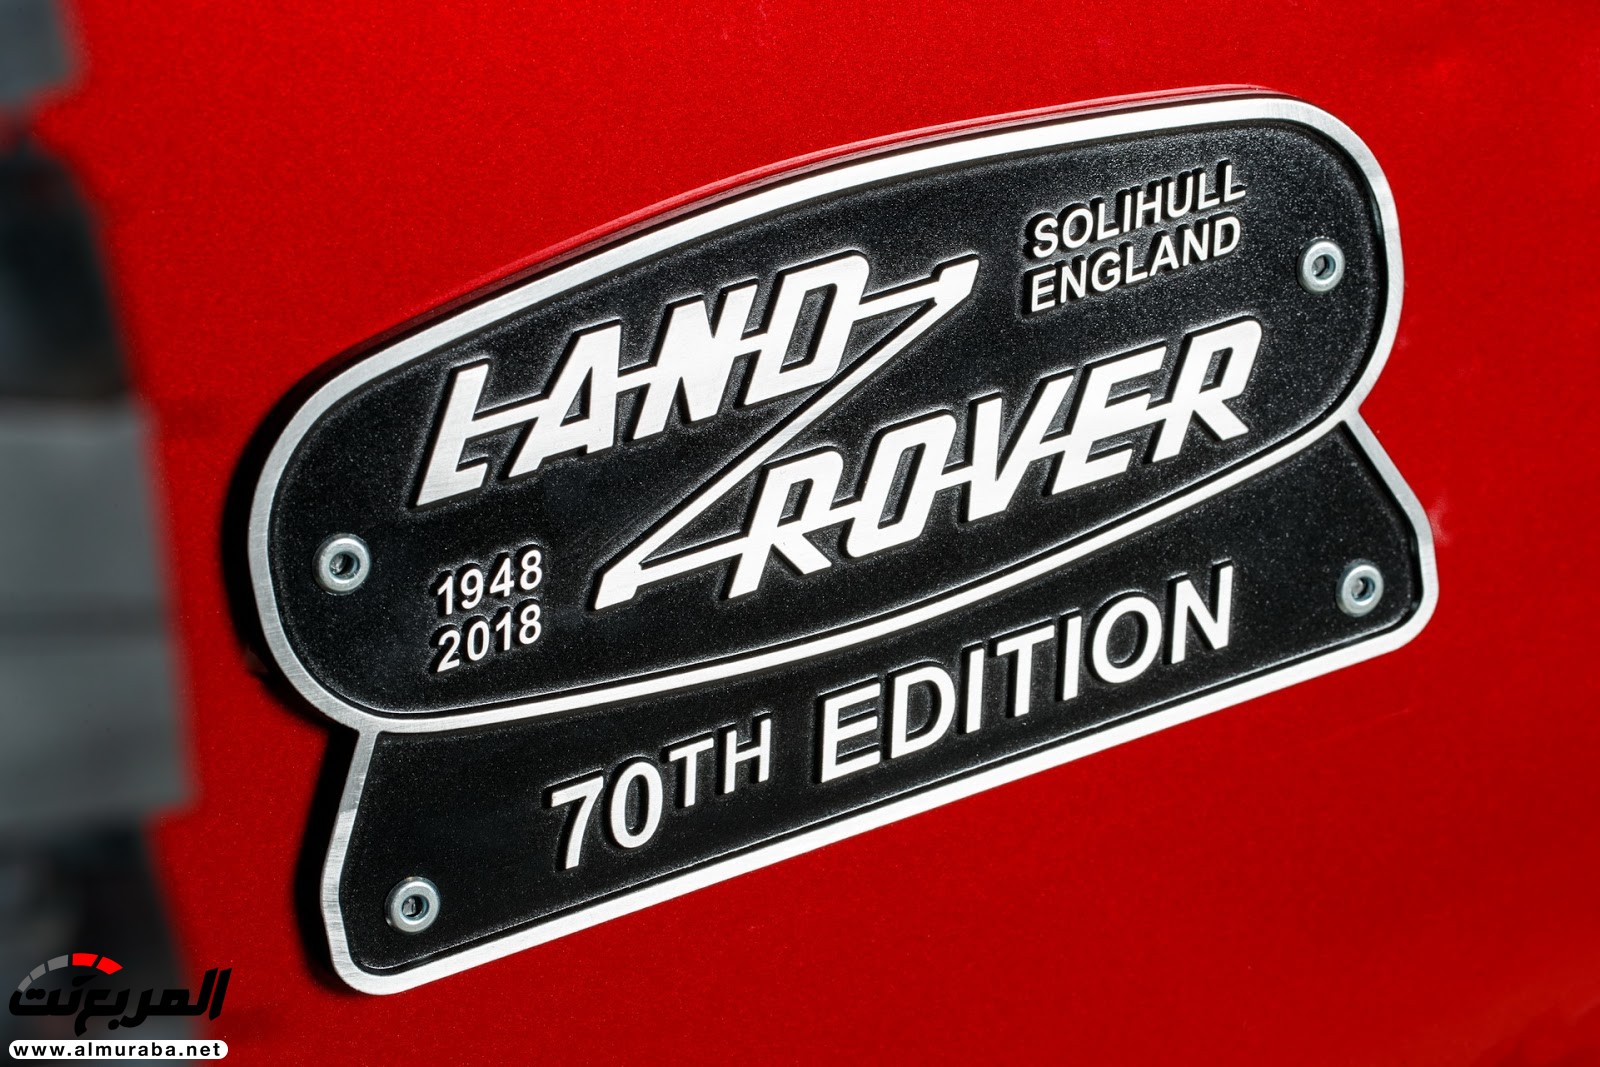 لاند روفر ديفندر تعود رسمياً بإصدار خاص بمحرك V8 بقوة 400 حصان 66